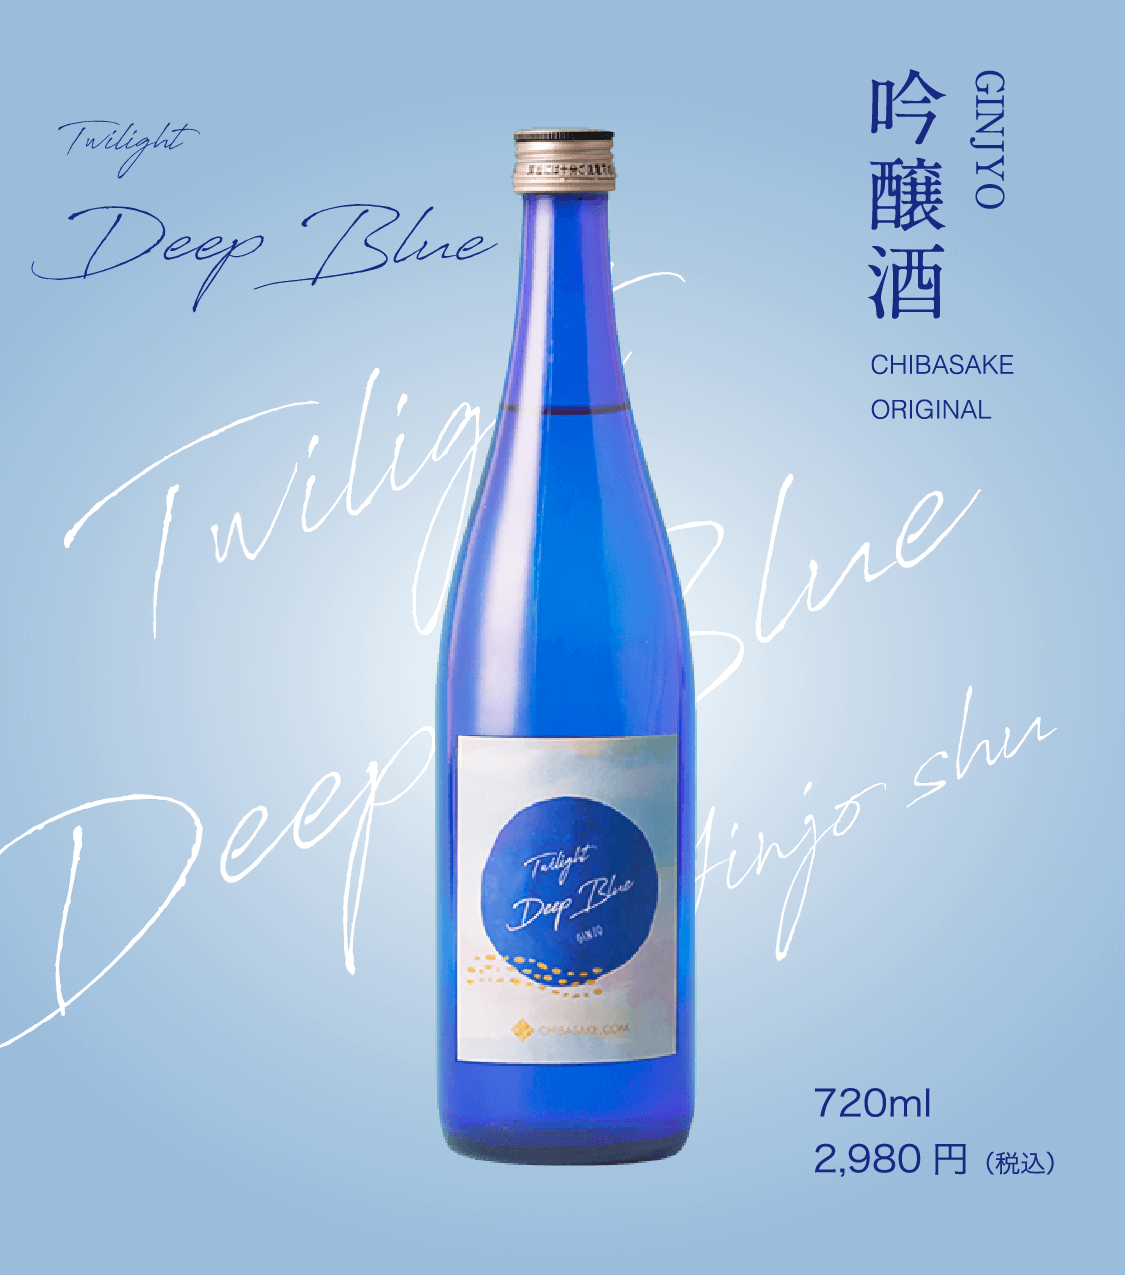 deepblue 吟醸酒 720ml
2,980 円（税込）